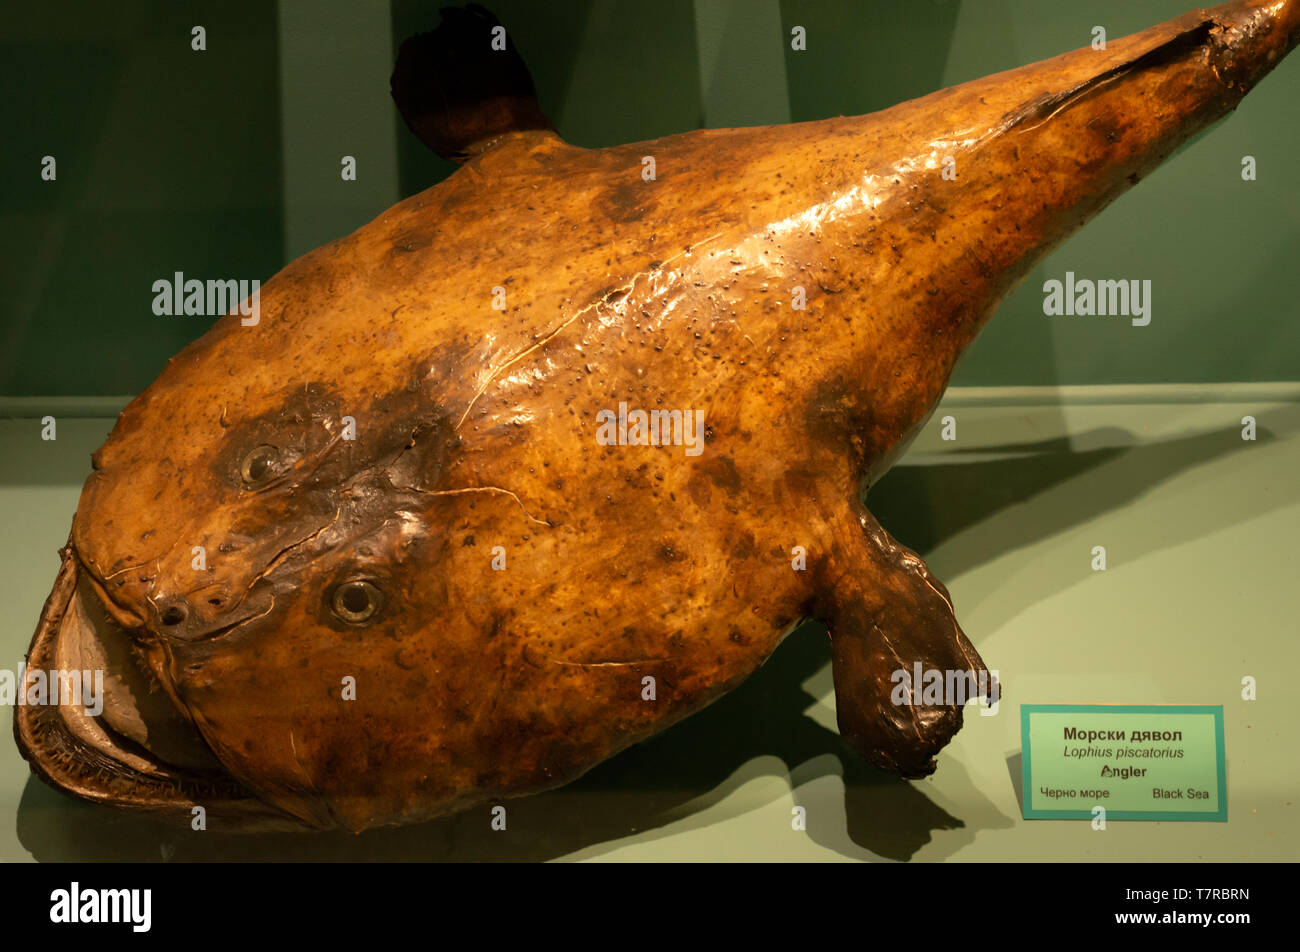 Poisson-pêcheur à la ligne ou Lophius piscatorius exposé au Musée national d'Histoire naturelle de Sofia Bulgarie Banque D'Images